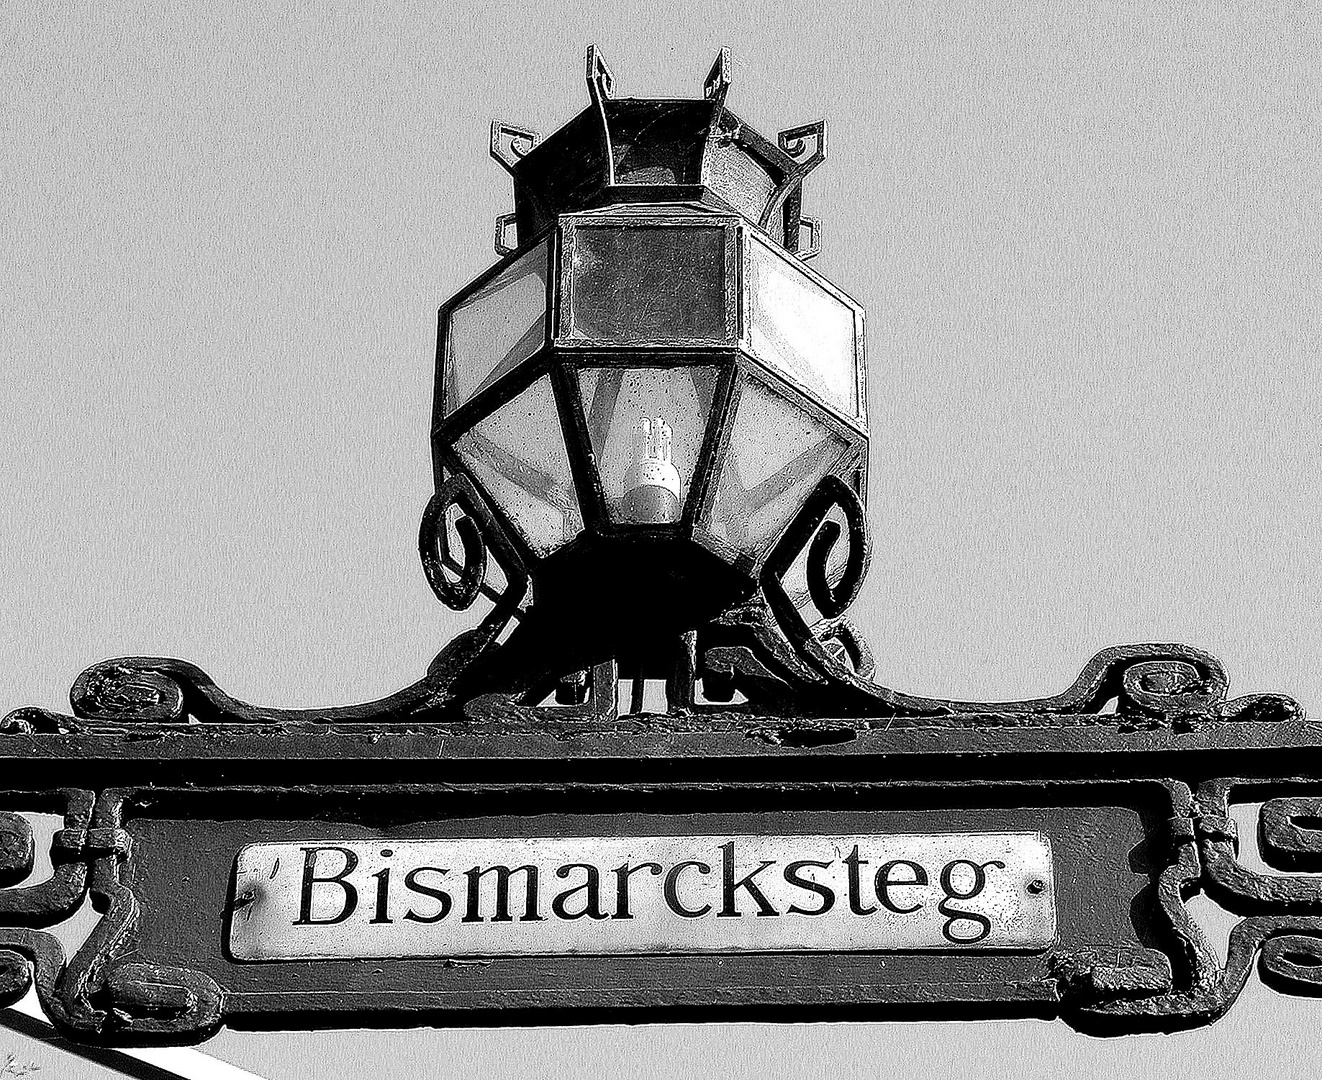 Bismarcksteg